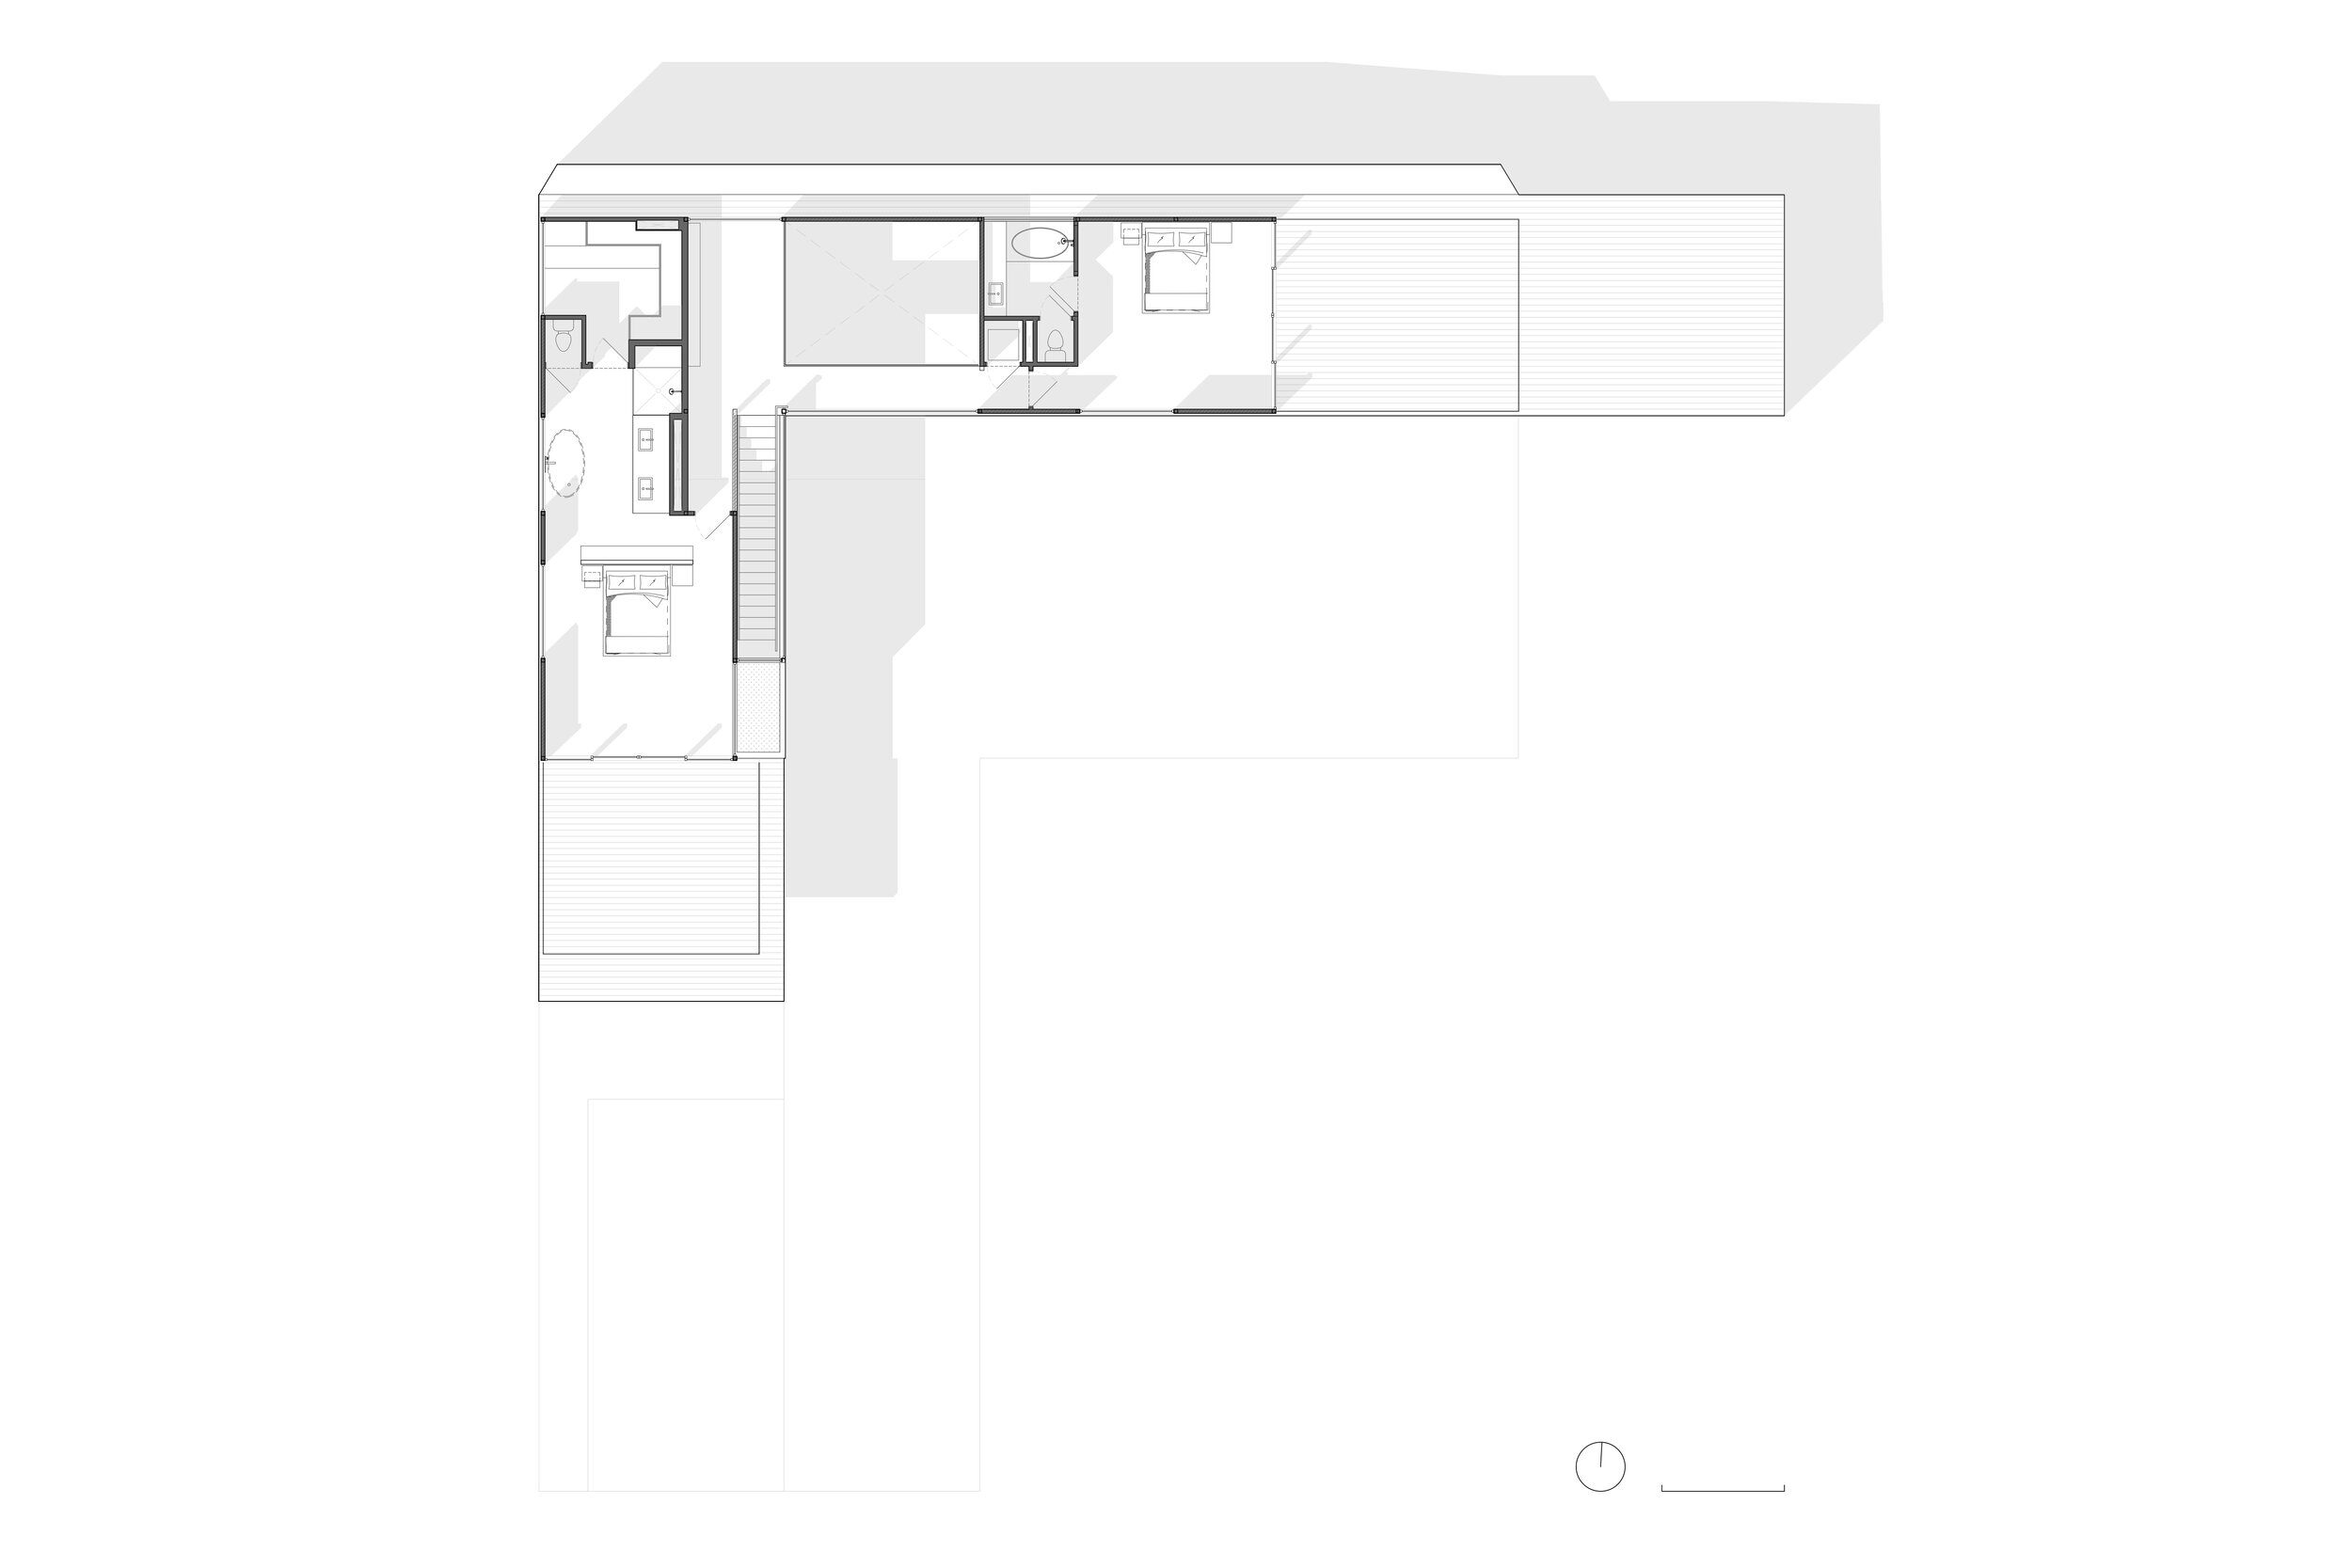 BD_Publication - Second Floor Plan.jpg